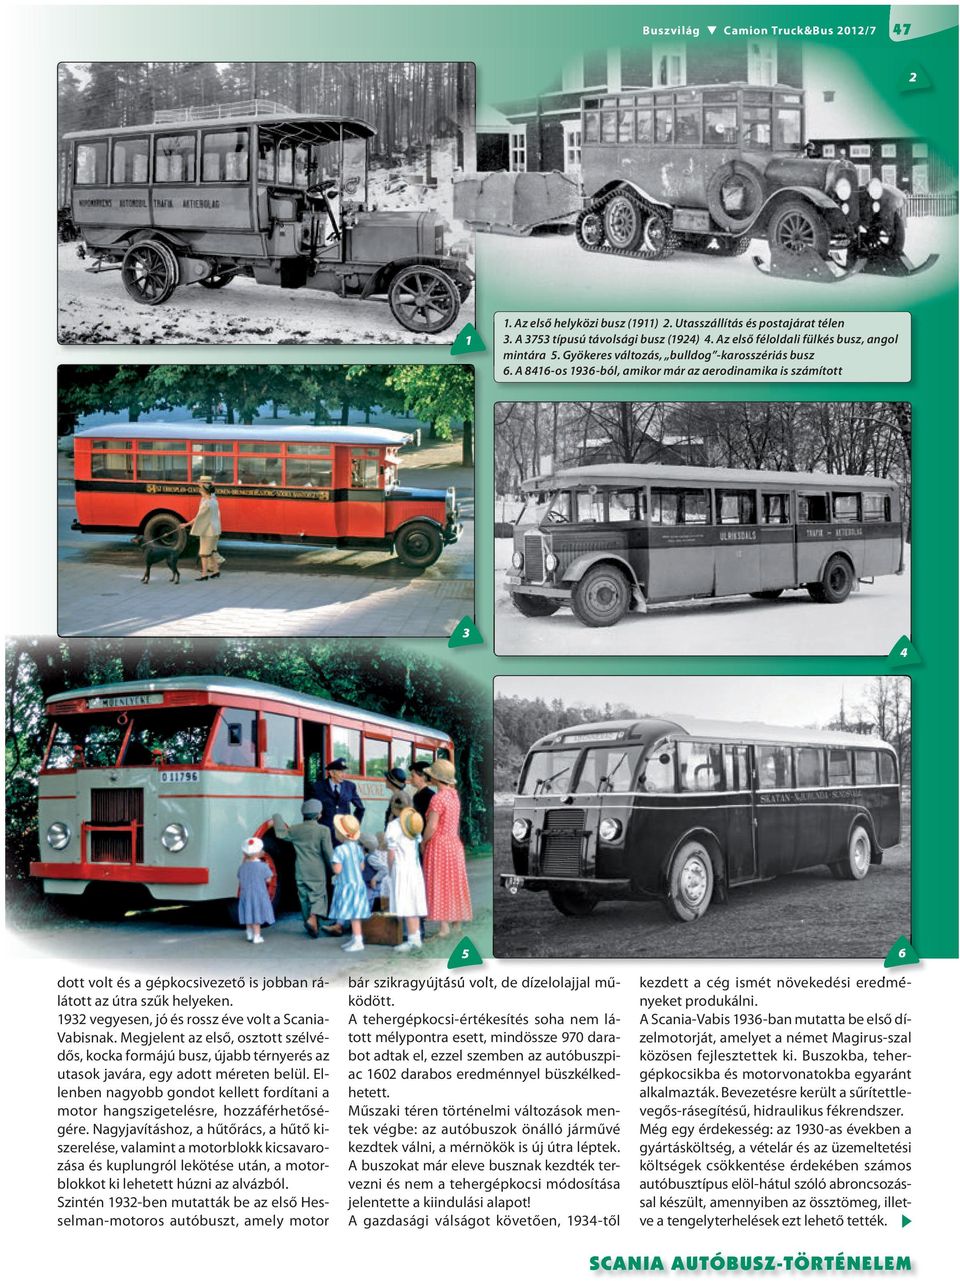 1932 vegyesen, jó és rossz éve volt a Scania- Vabisnak. Megjelent az első, osztott szélvédős, kocka formájú busz, újabb térnyerés az utasok javára, egy adott méreten belül.